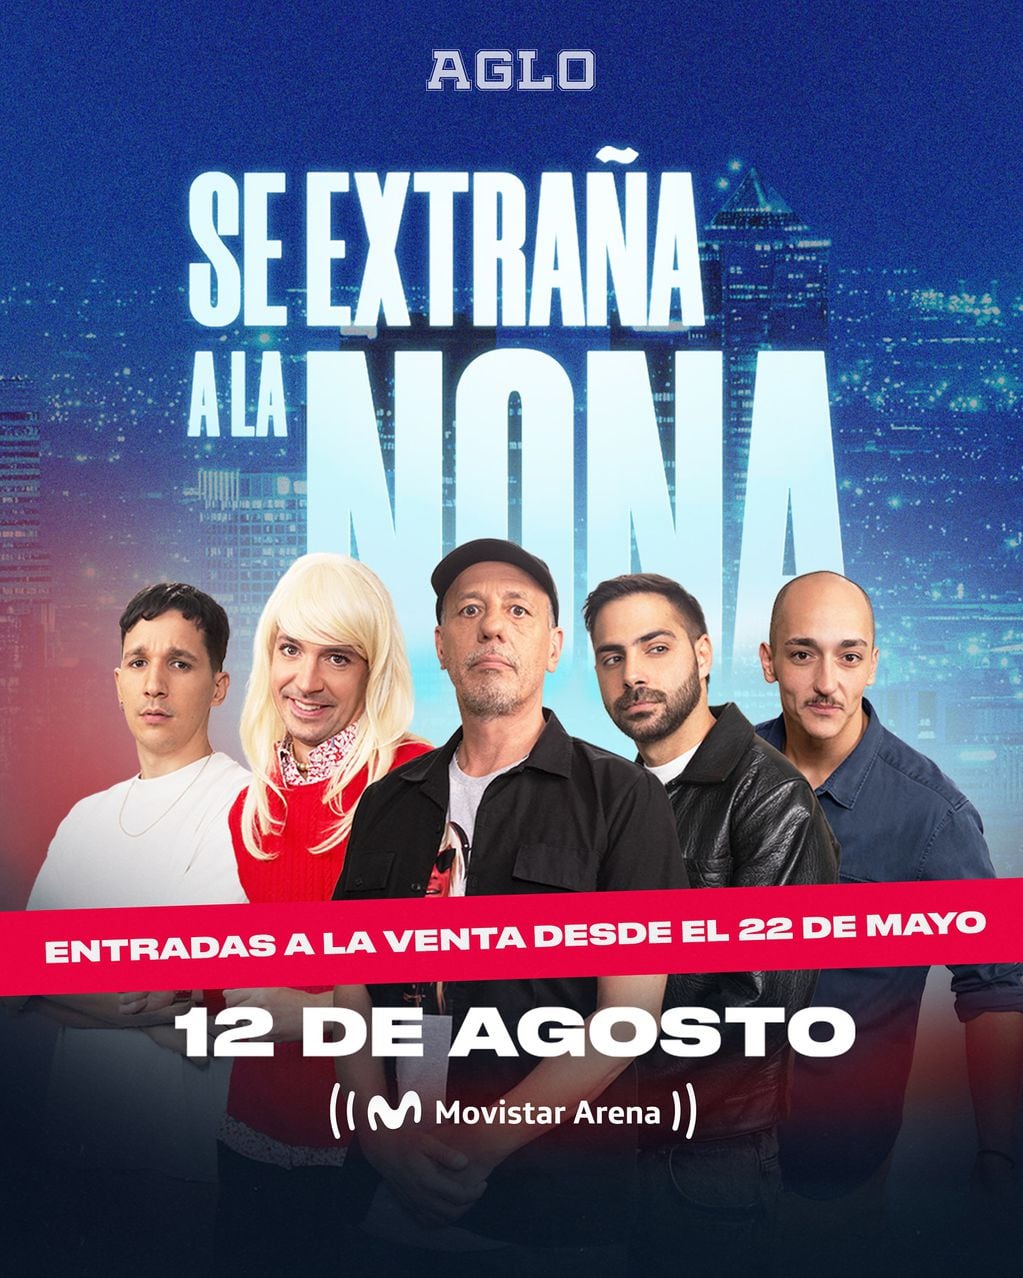 "Se extraña a la nona" brindará un show en el Movistar Arena